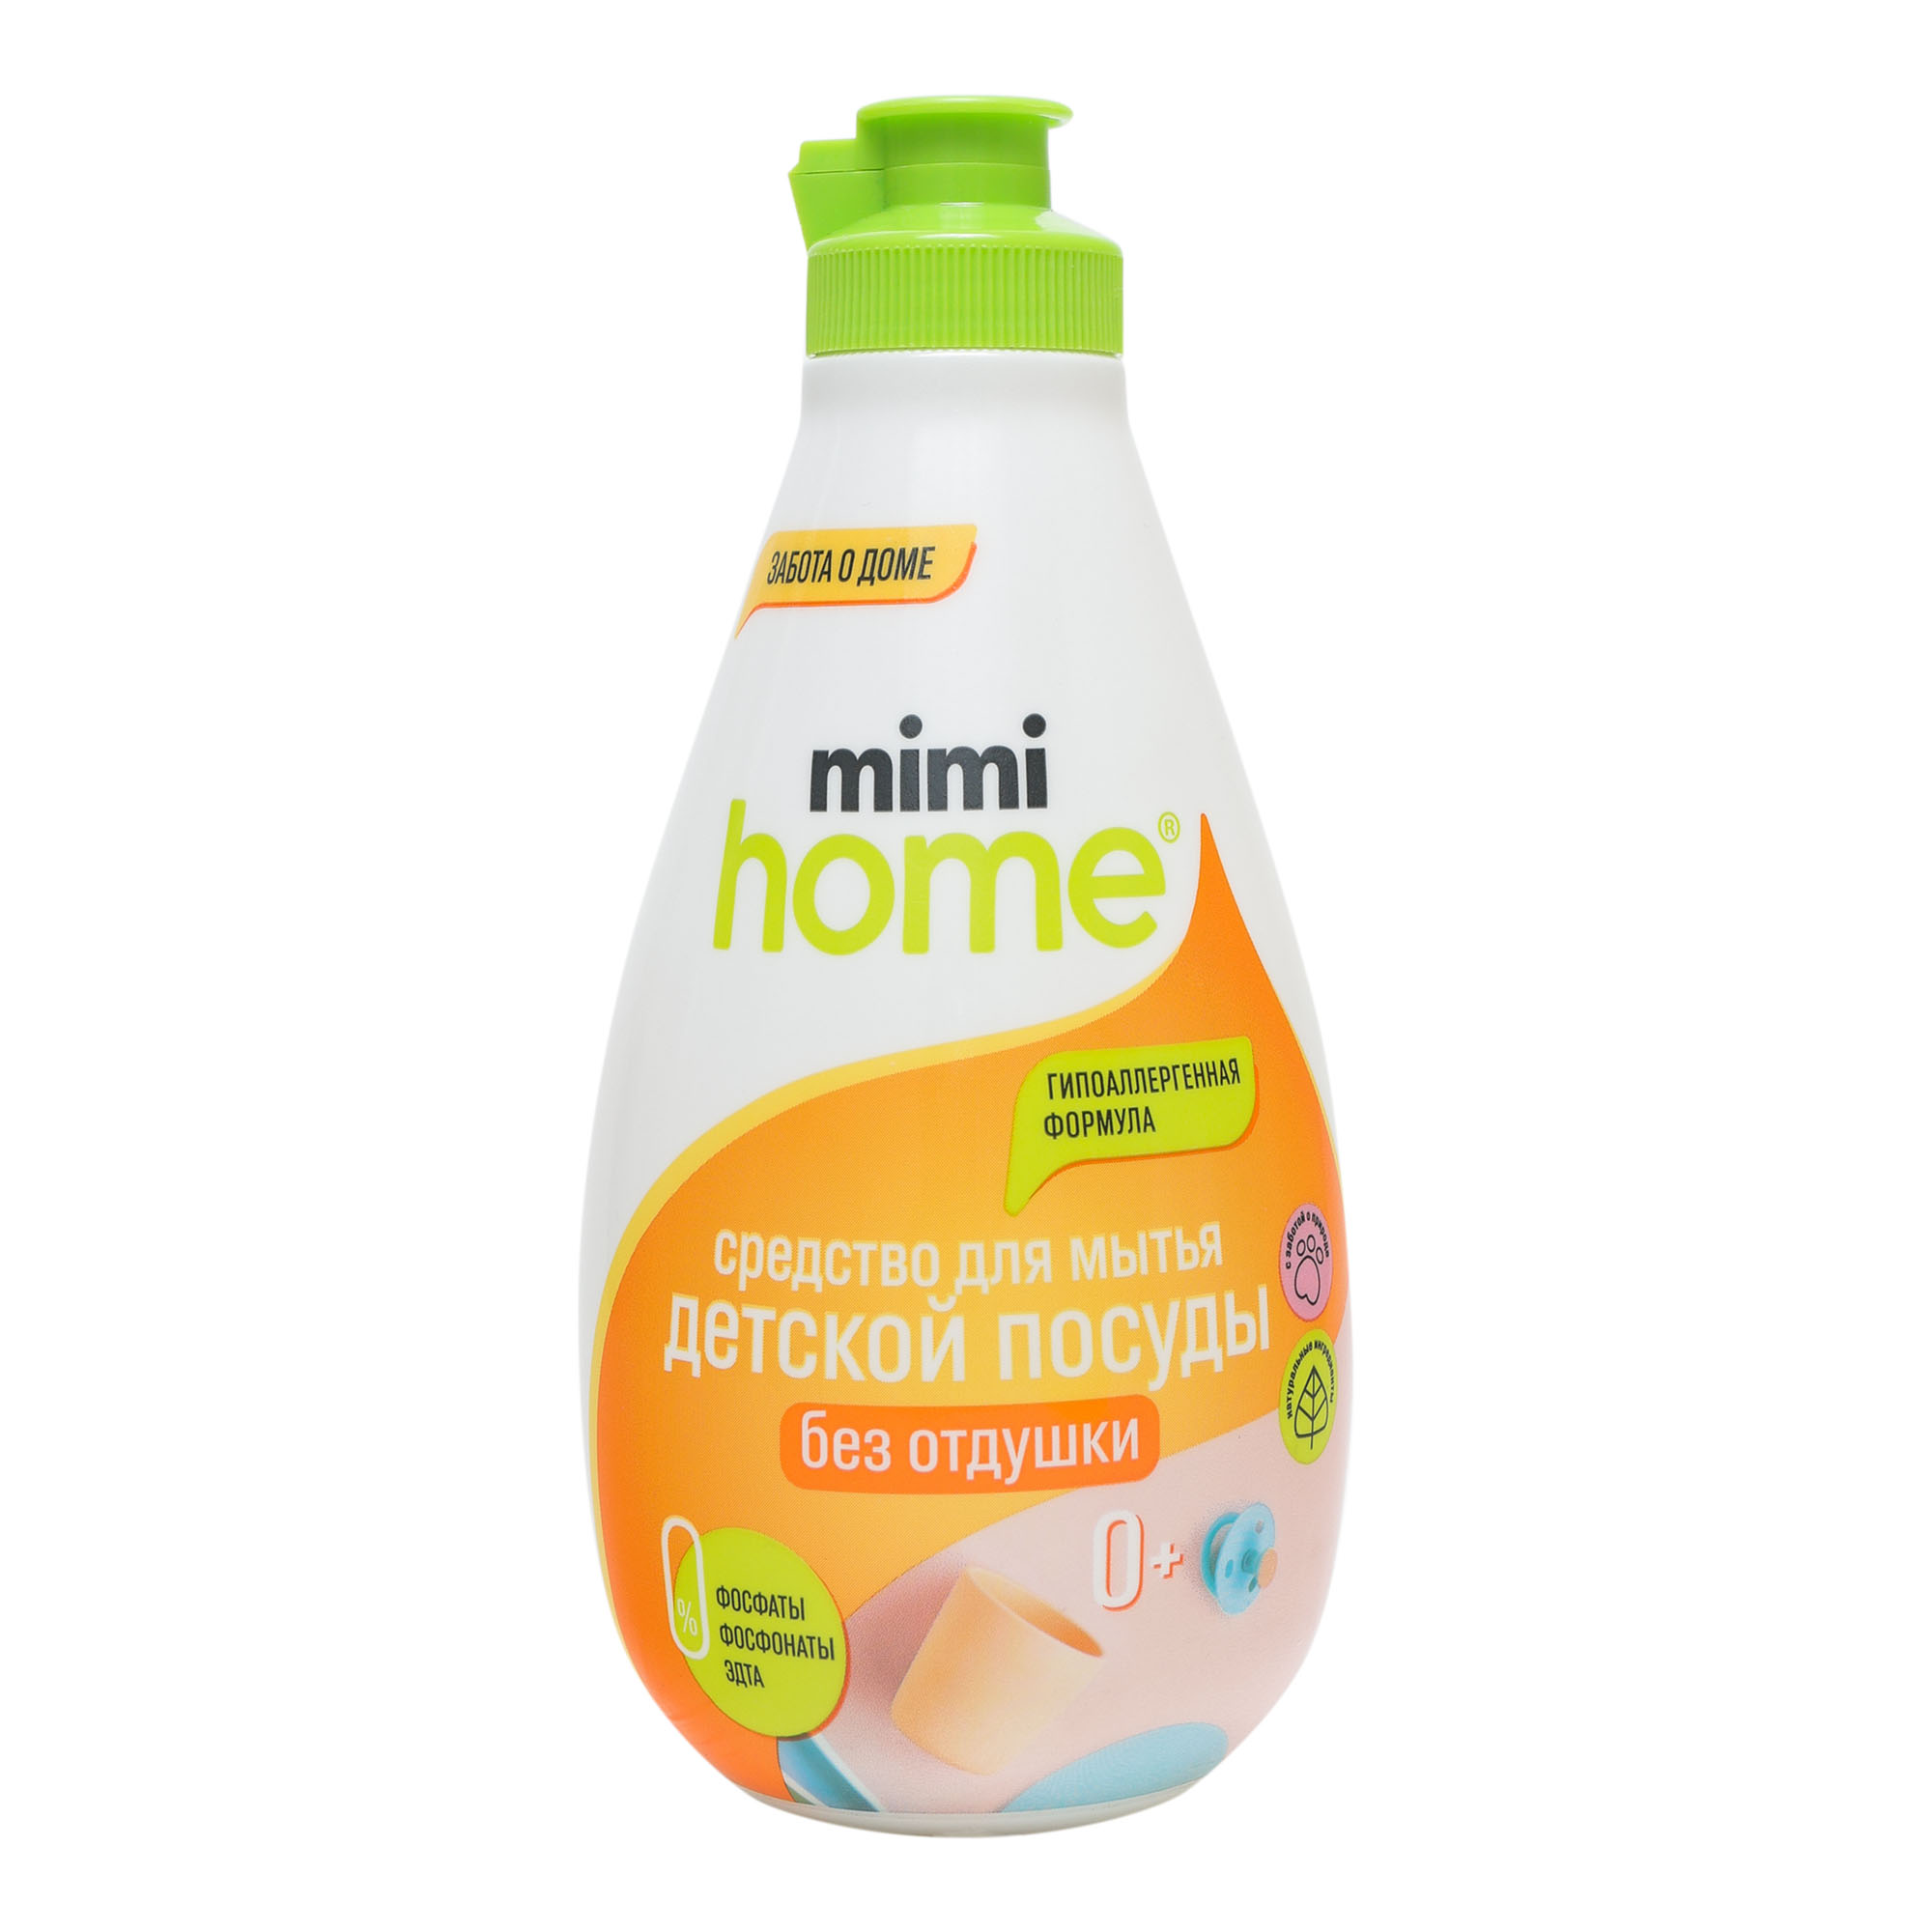 Средство для мытья детской посуды Mimi Home 370 мл цена и фото